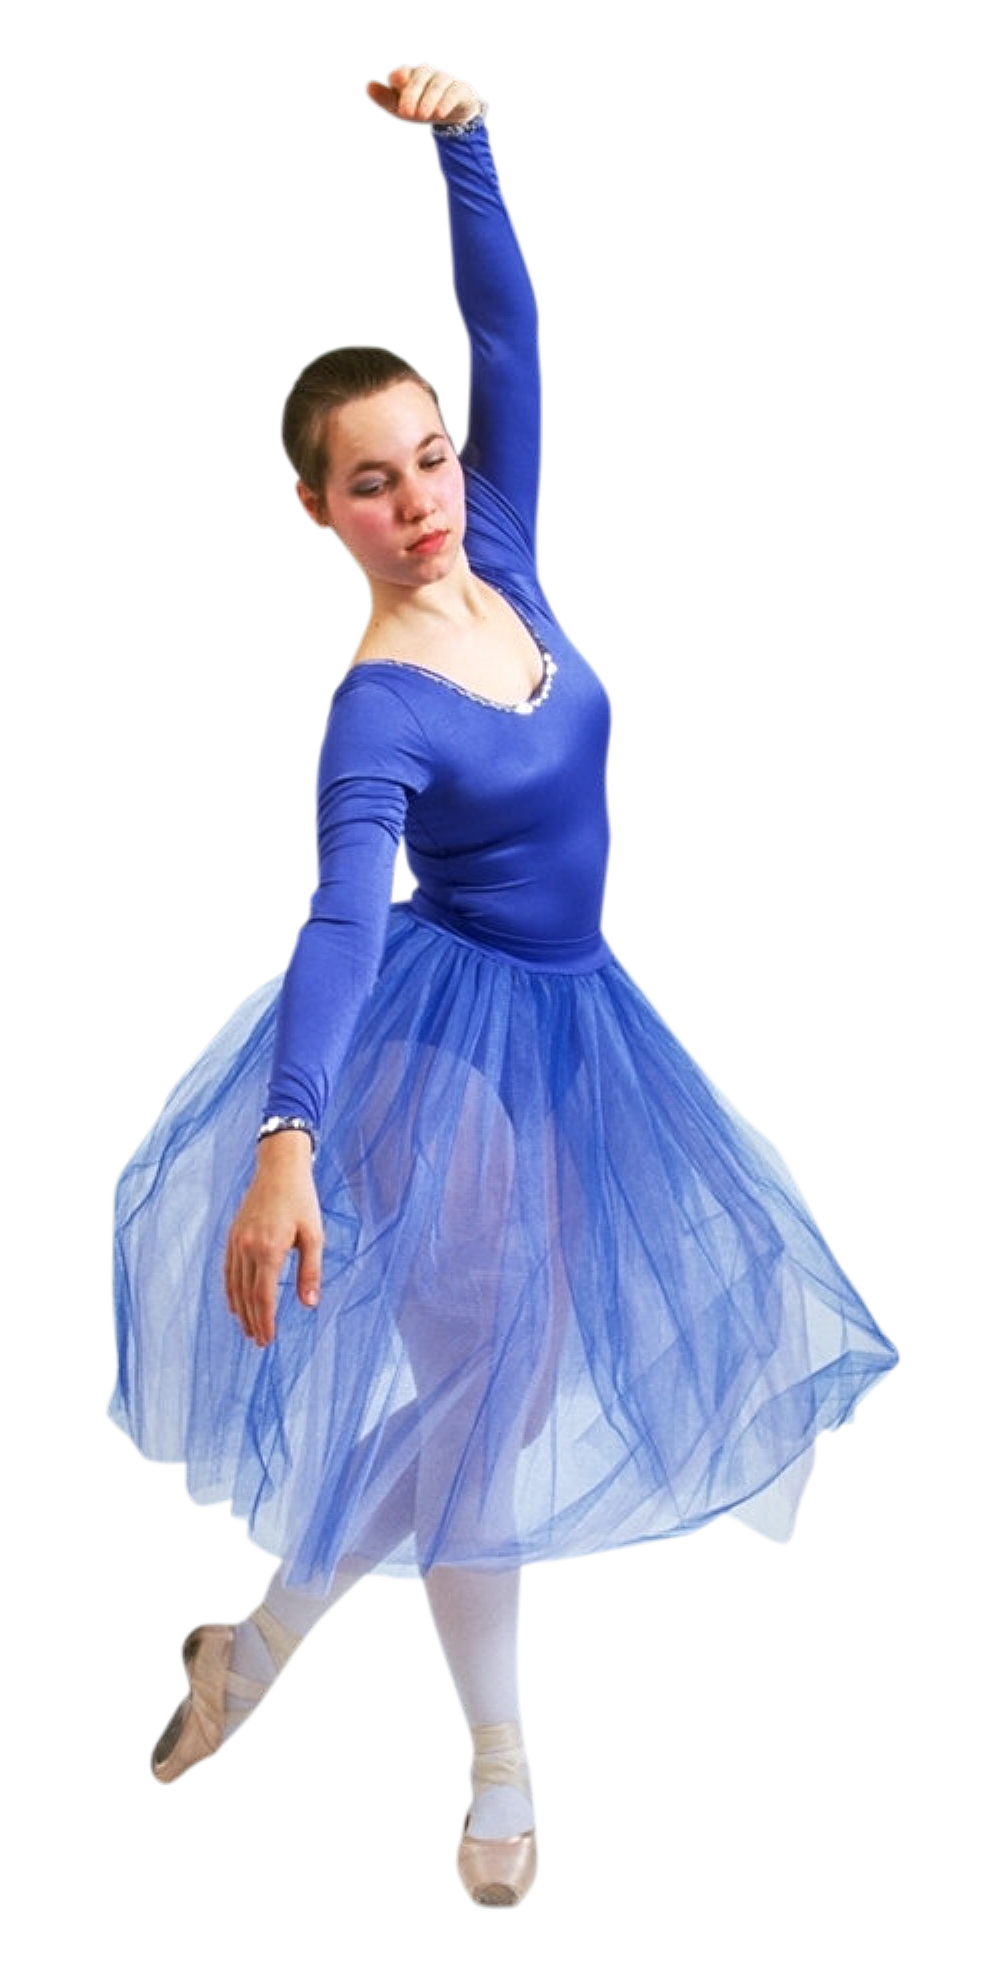 Ballet dancing photo